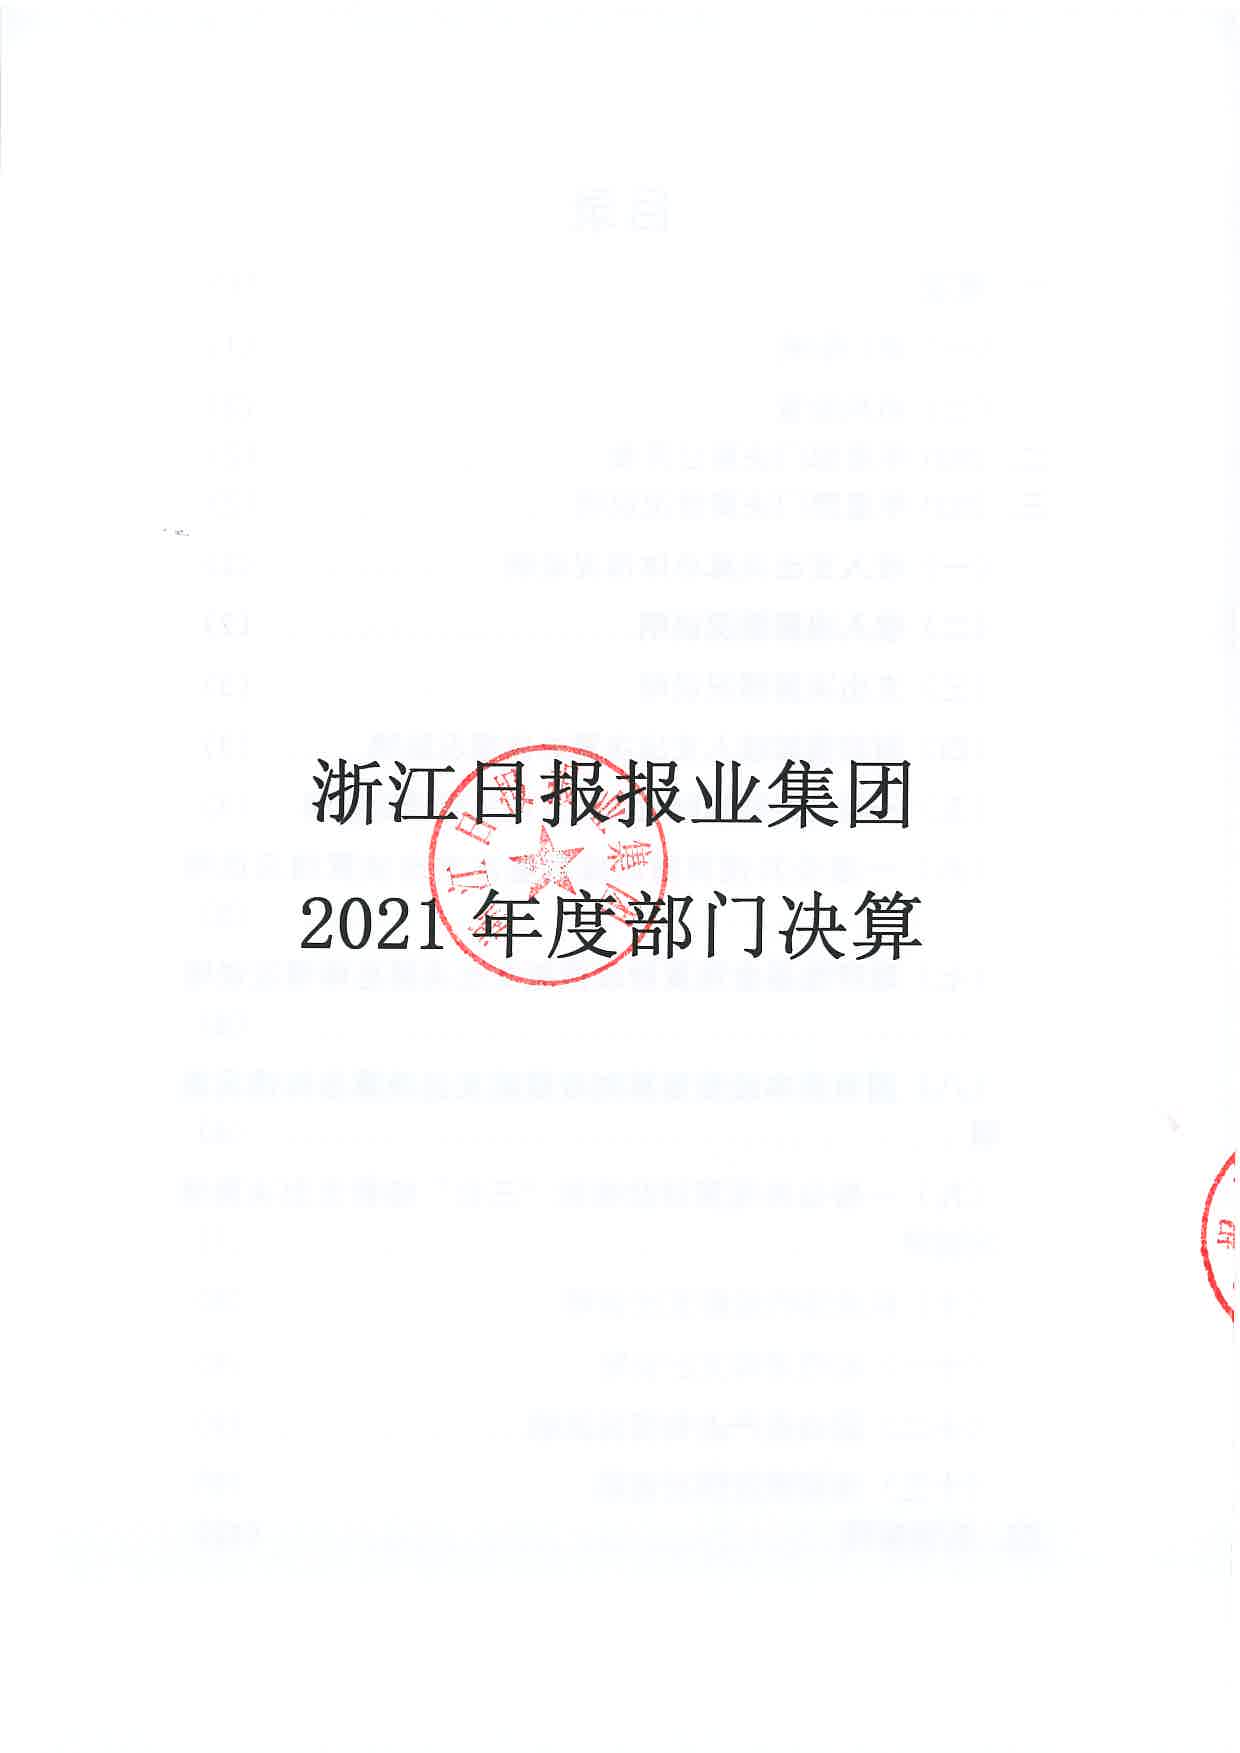 浙江日报报业集团2021年度部门决算_页面_01.jpg